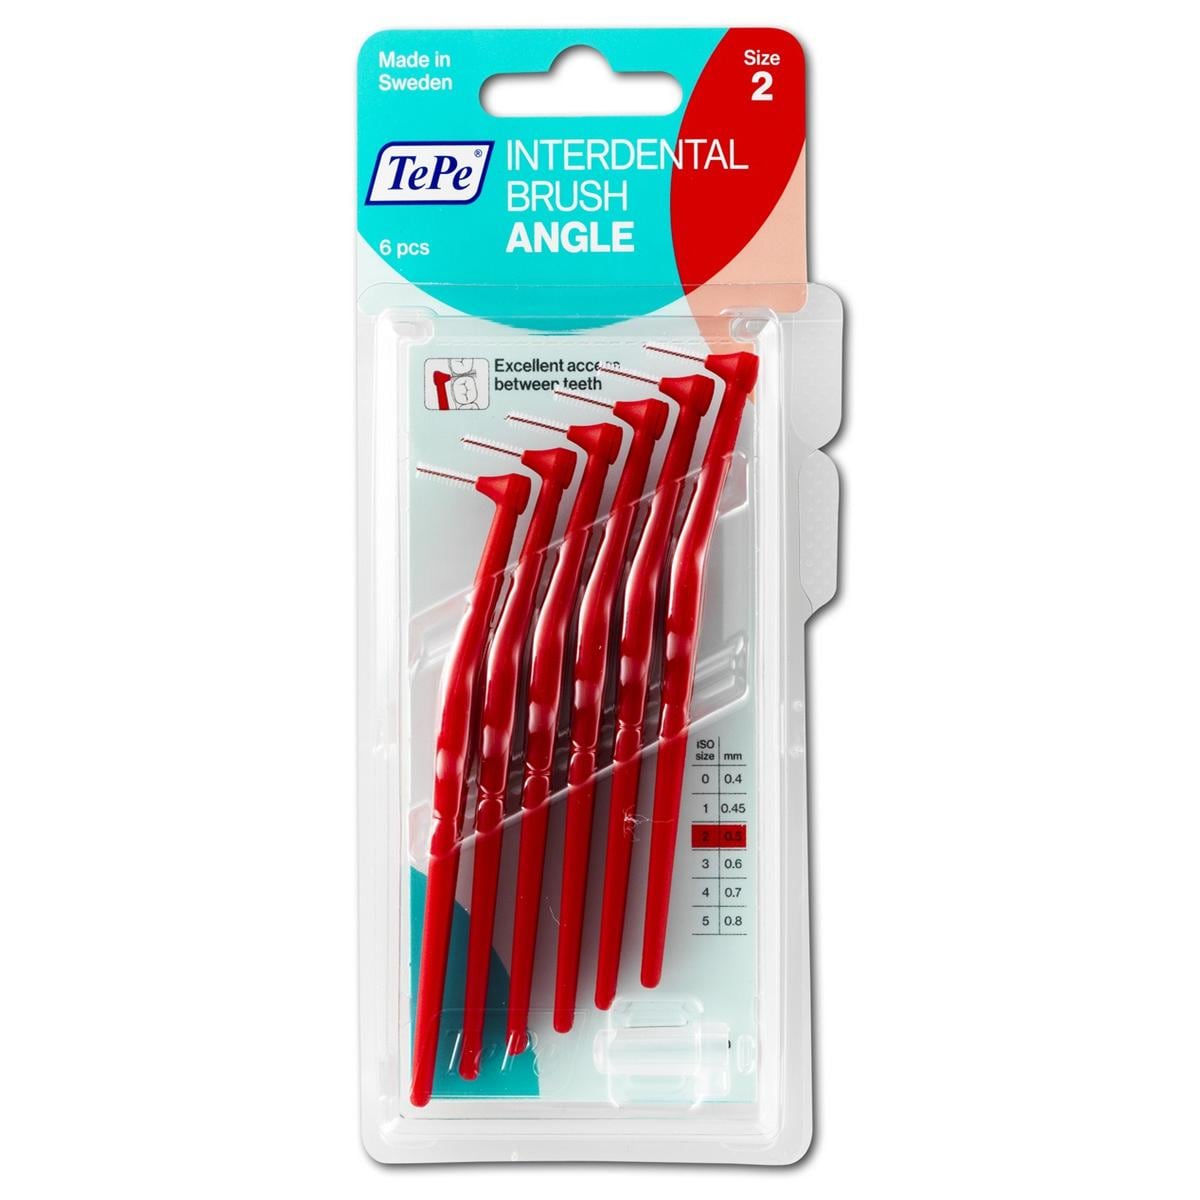 Angle Interdentale Ragers - Rood, 0,5 mm - 6 stuks